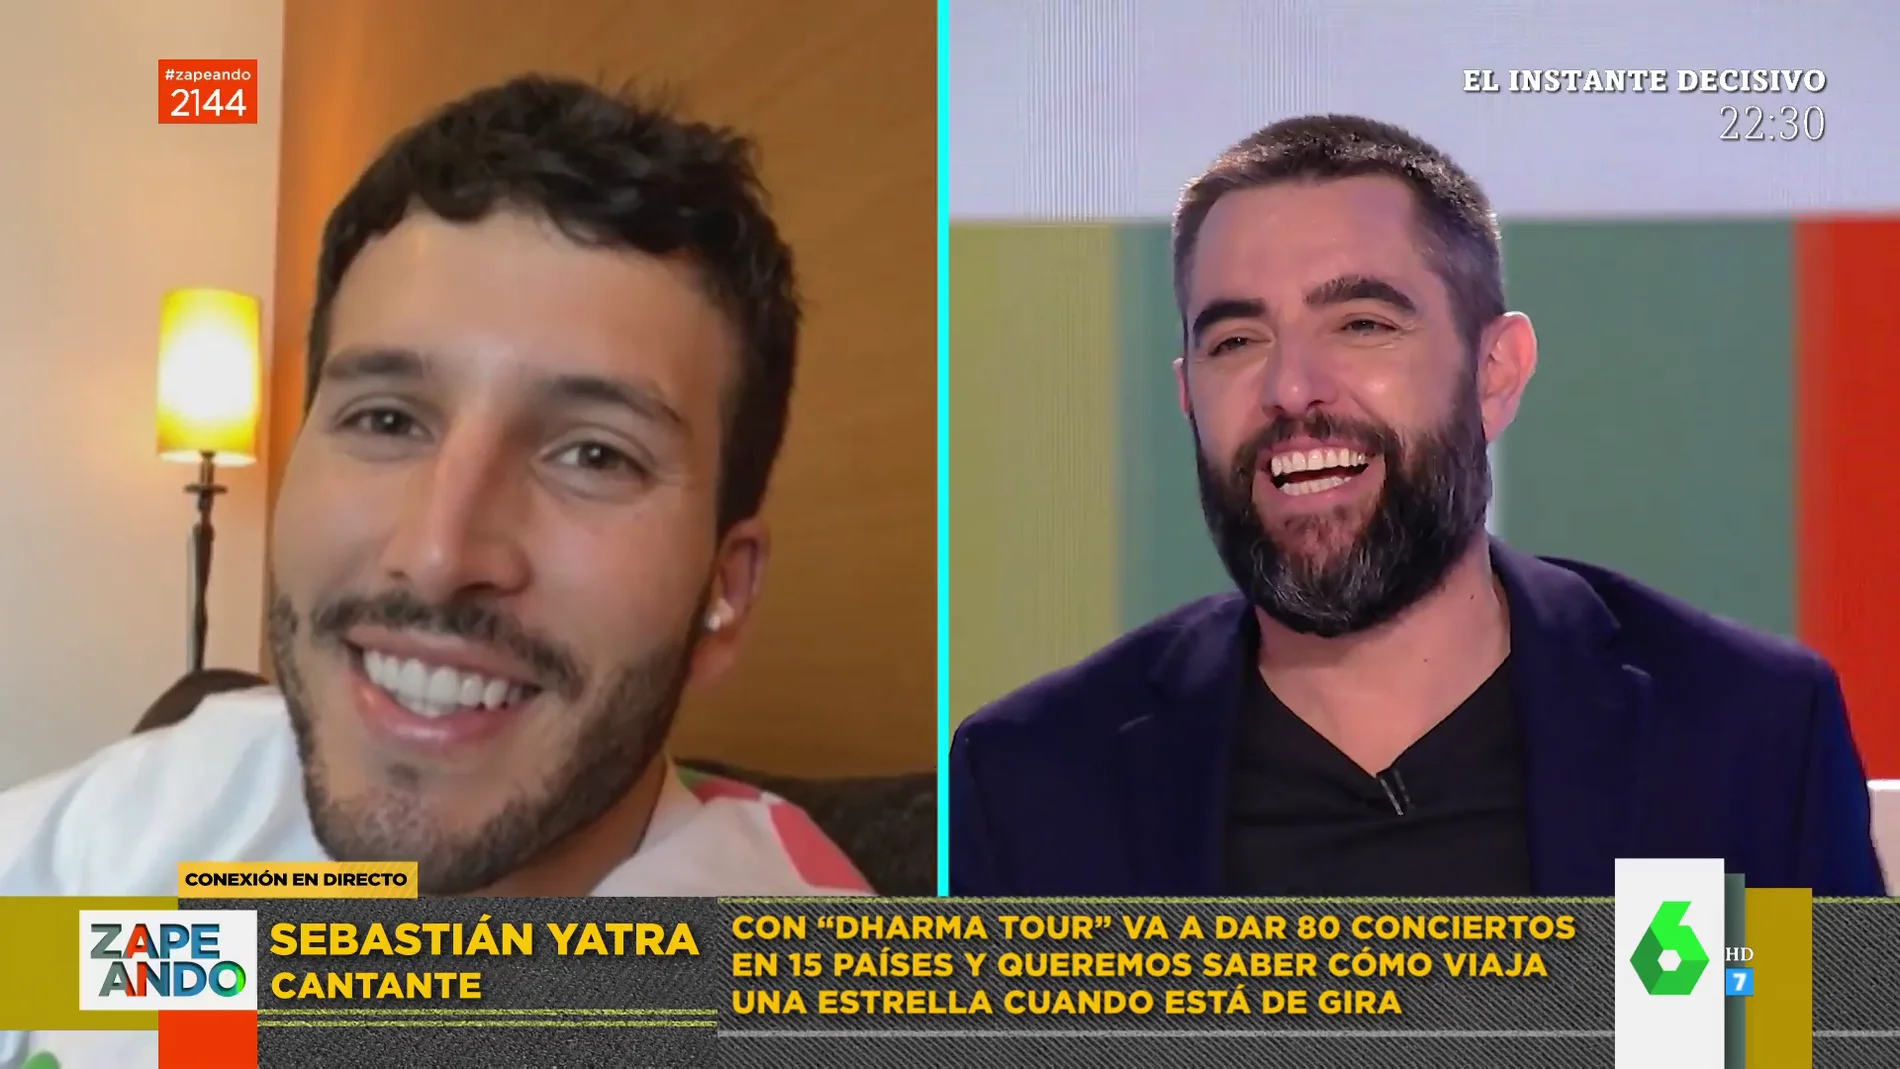 Sebastián Yatra confiesa que el peor show de su vida fue en Madrid: "Me tiraron hielos y el de seguridad le rompió la cara a mi hermano"